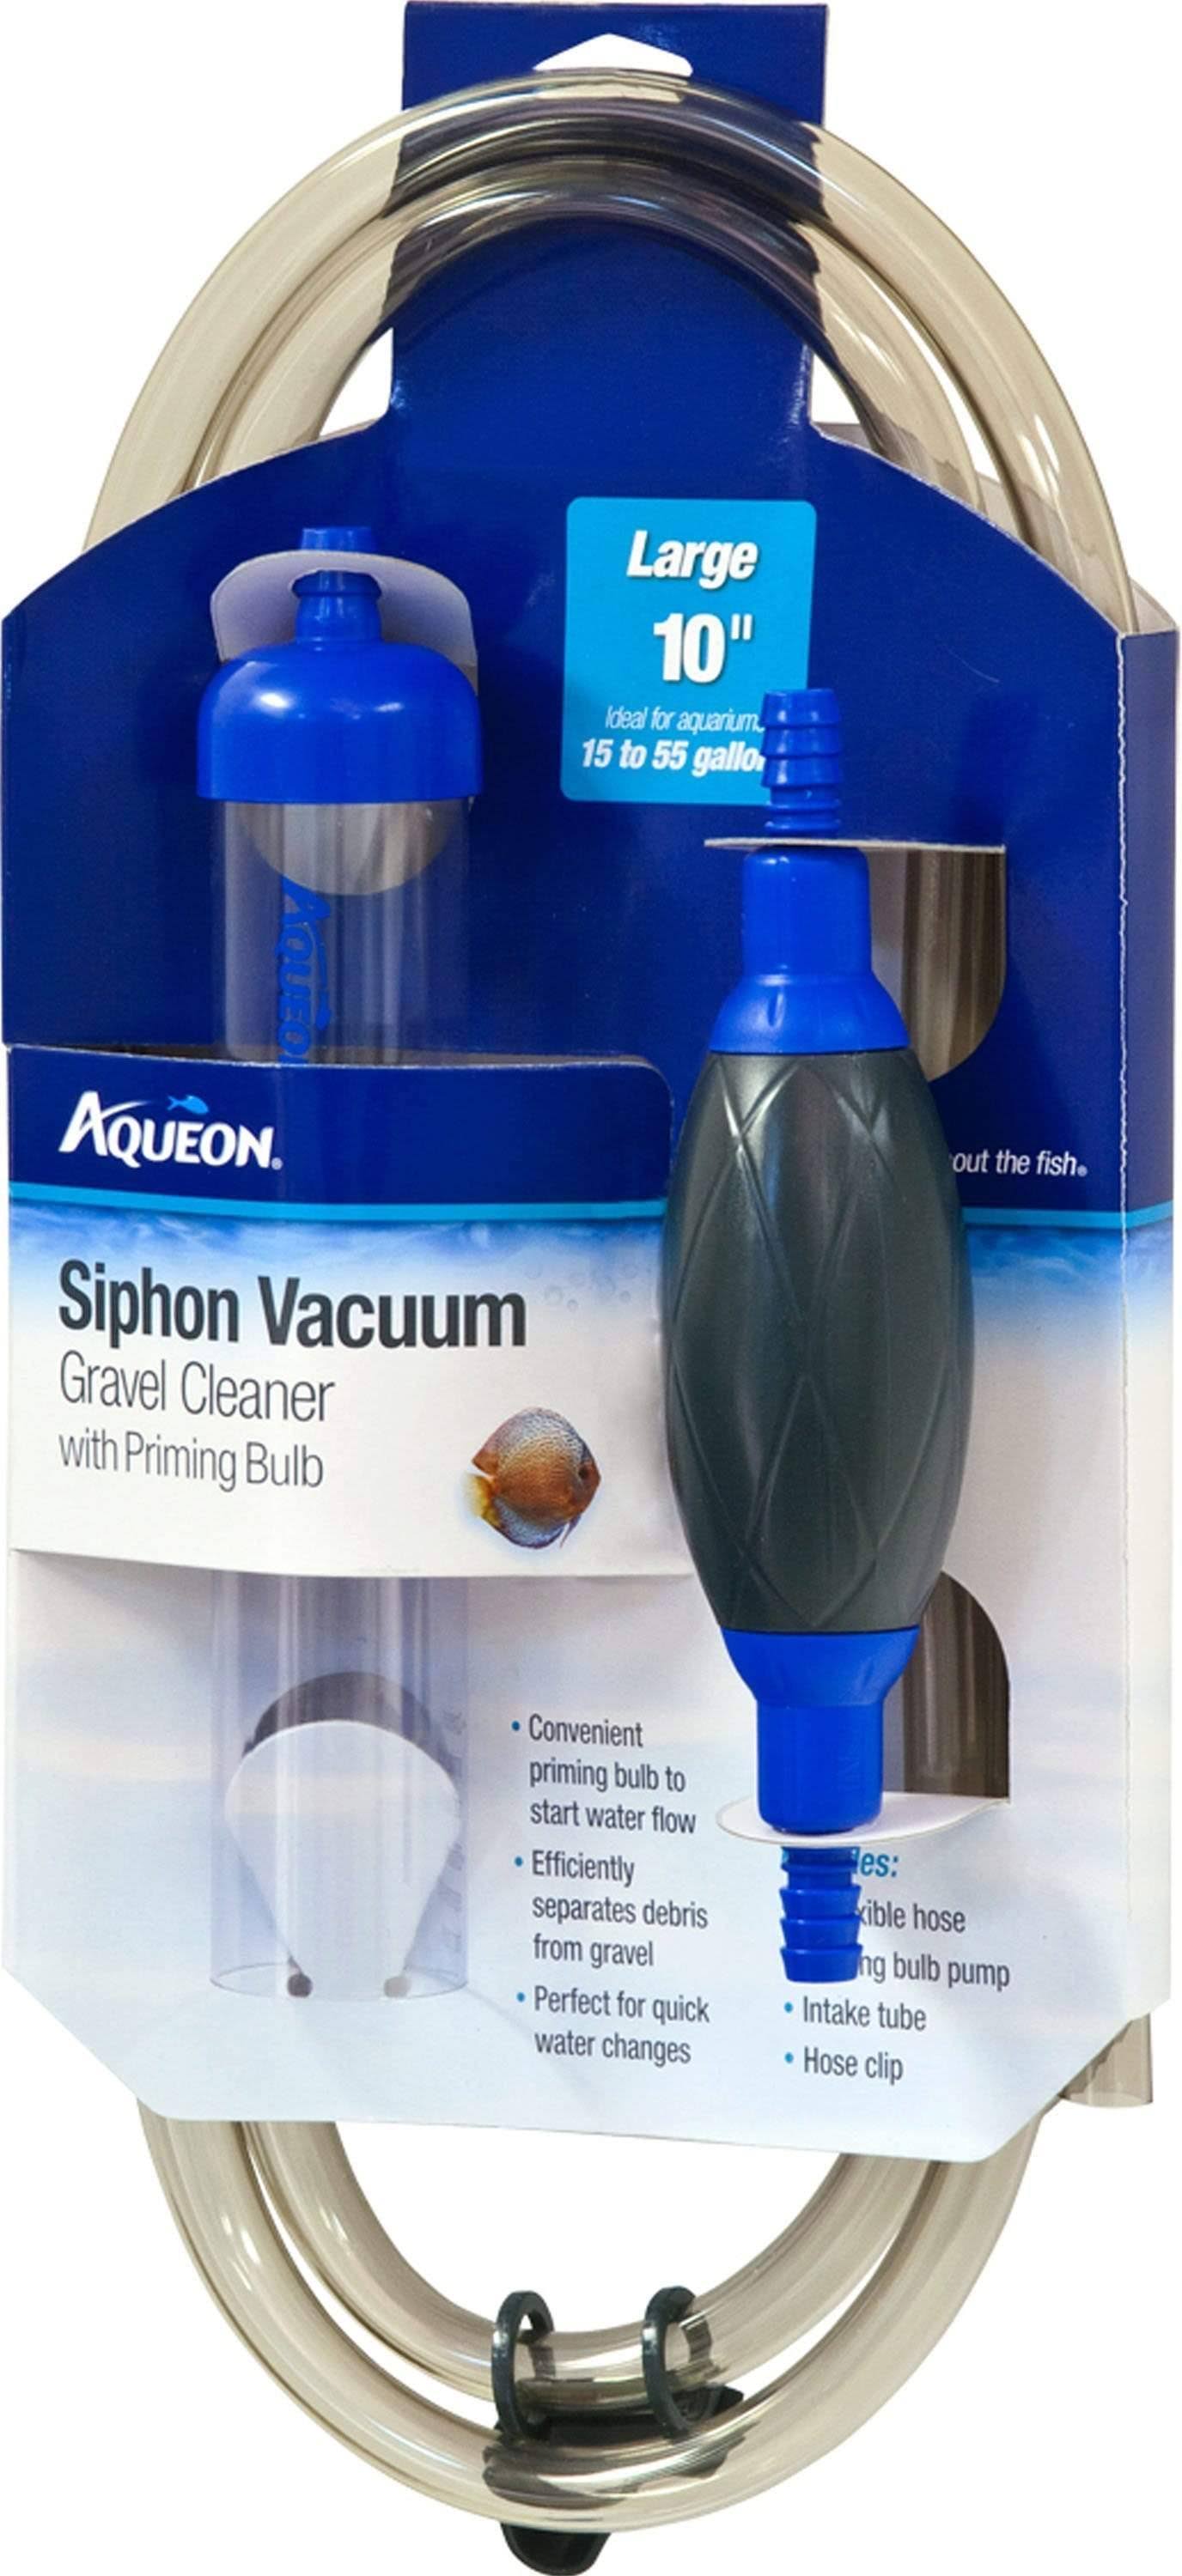 Aqueon Siphon Vacuum Gravel Cleaner - 10"